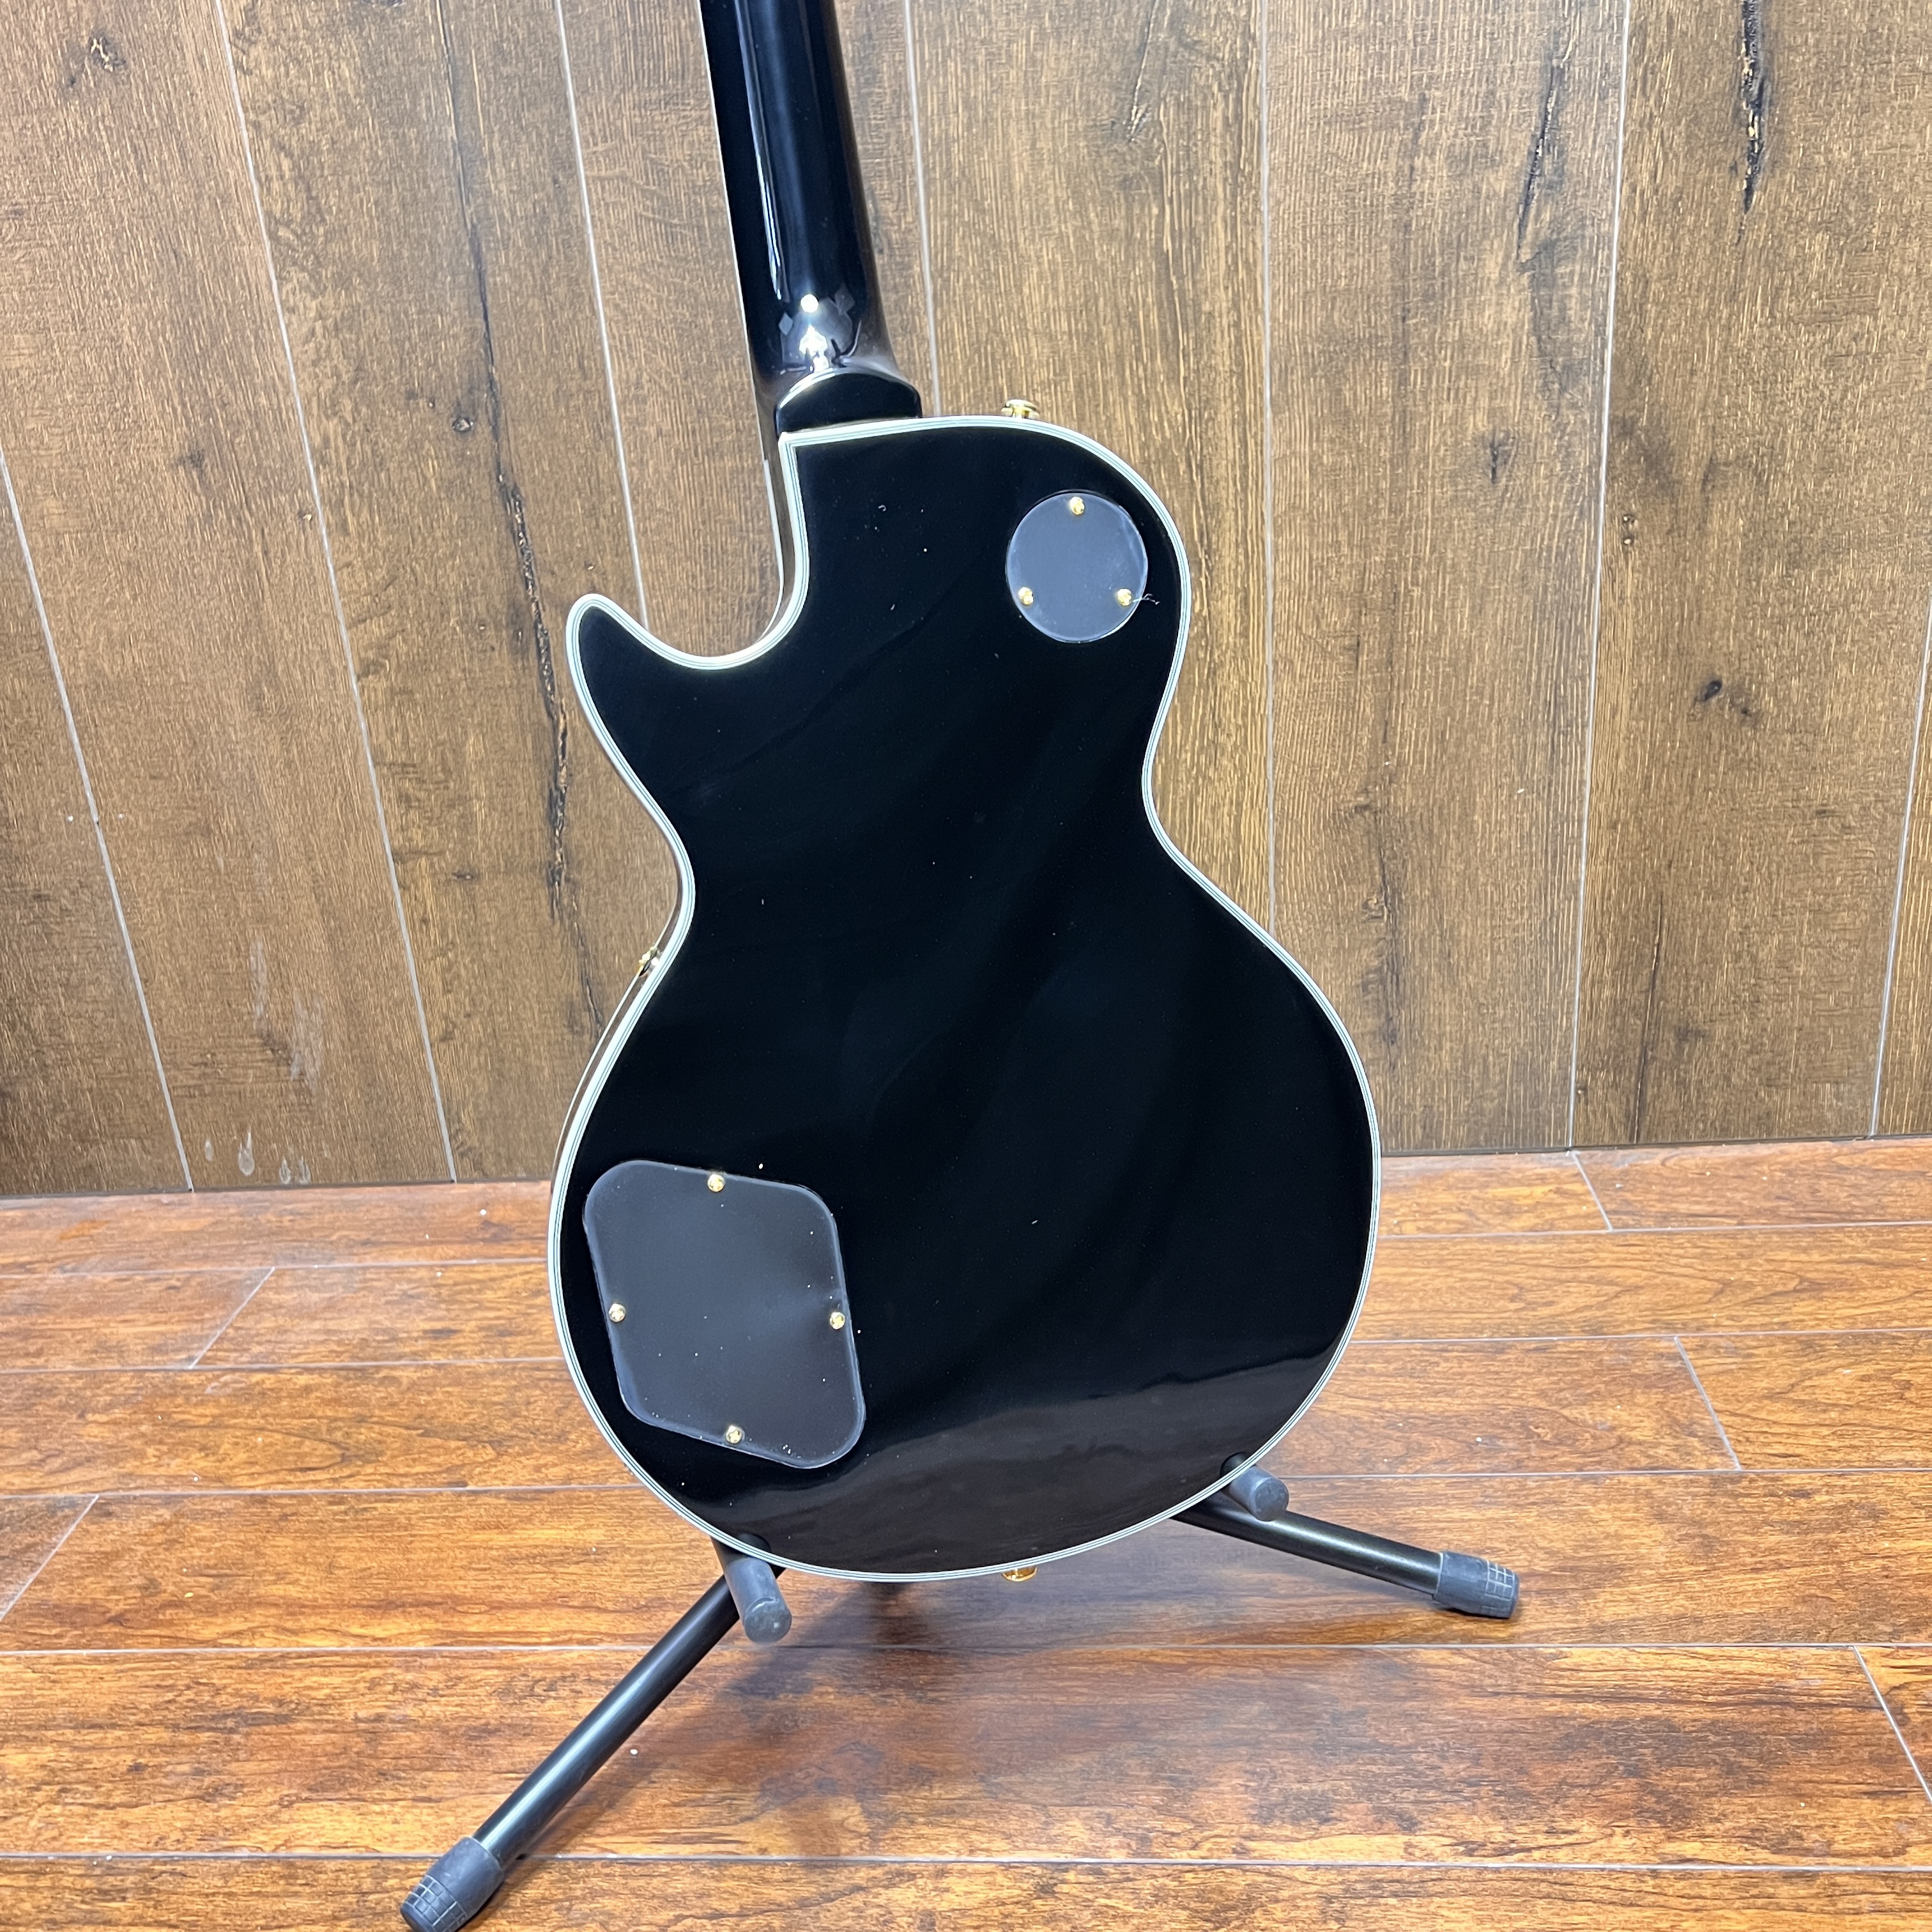 Guitarra elétrica lp personalizada, cor preta, hardware dourado, venda quente, som de alta qualidade, bom em estoque, frete grátis